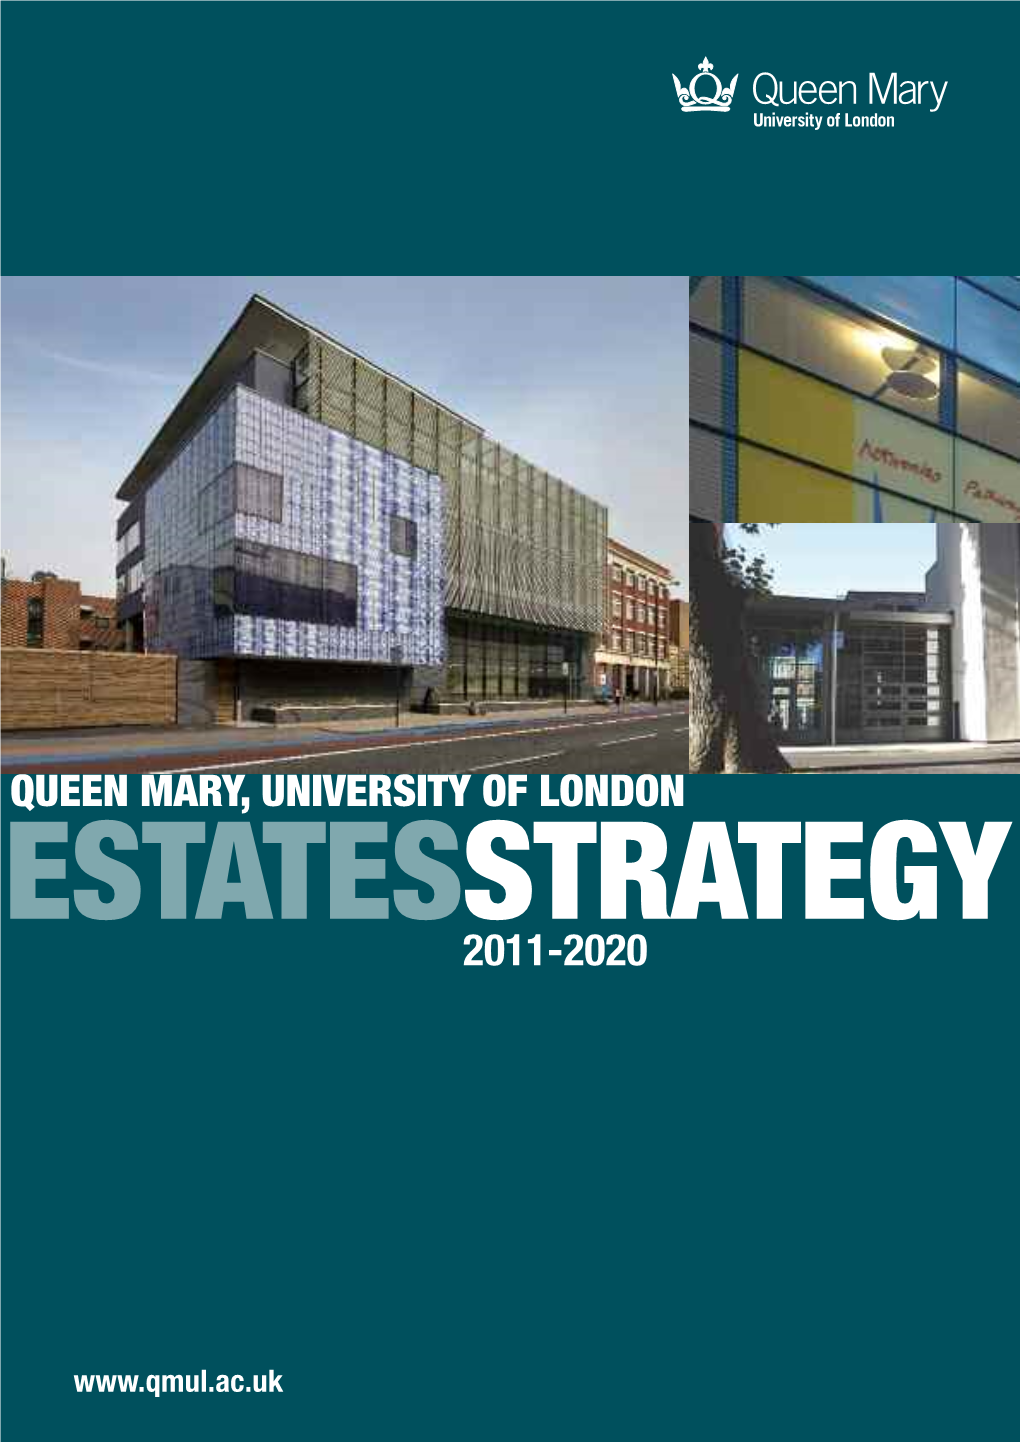 Estates Strategy [PDF 1633KB]